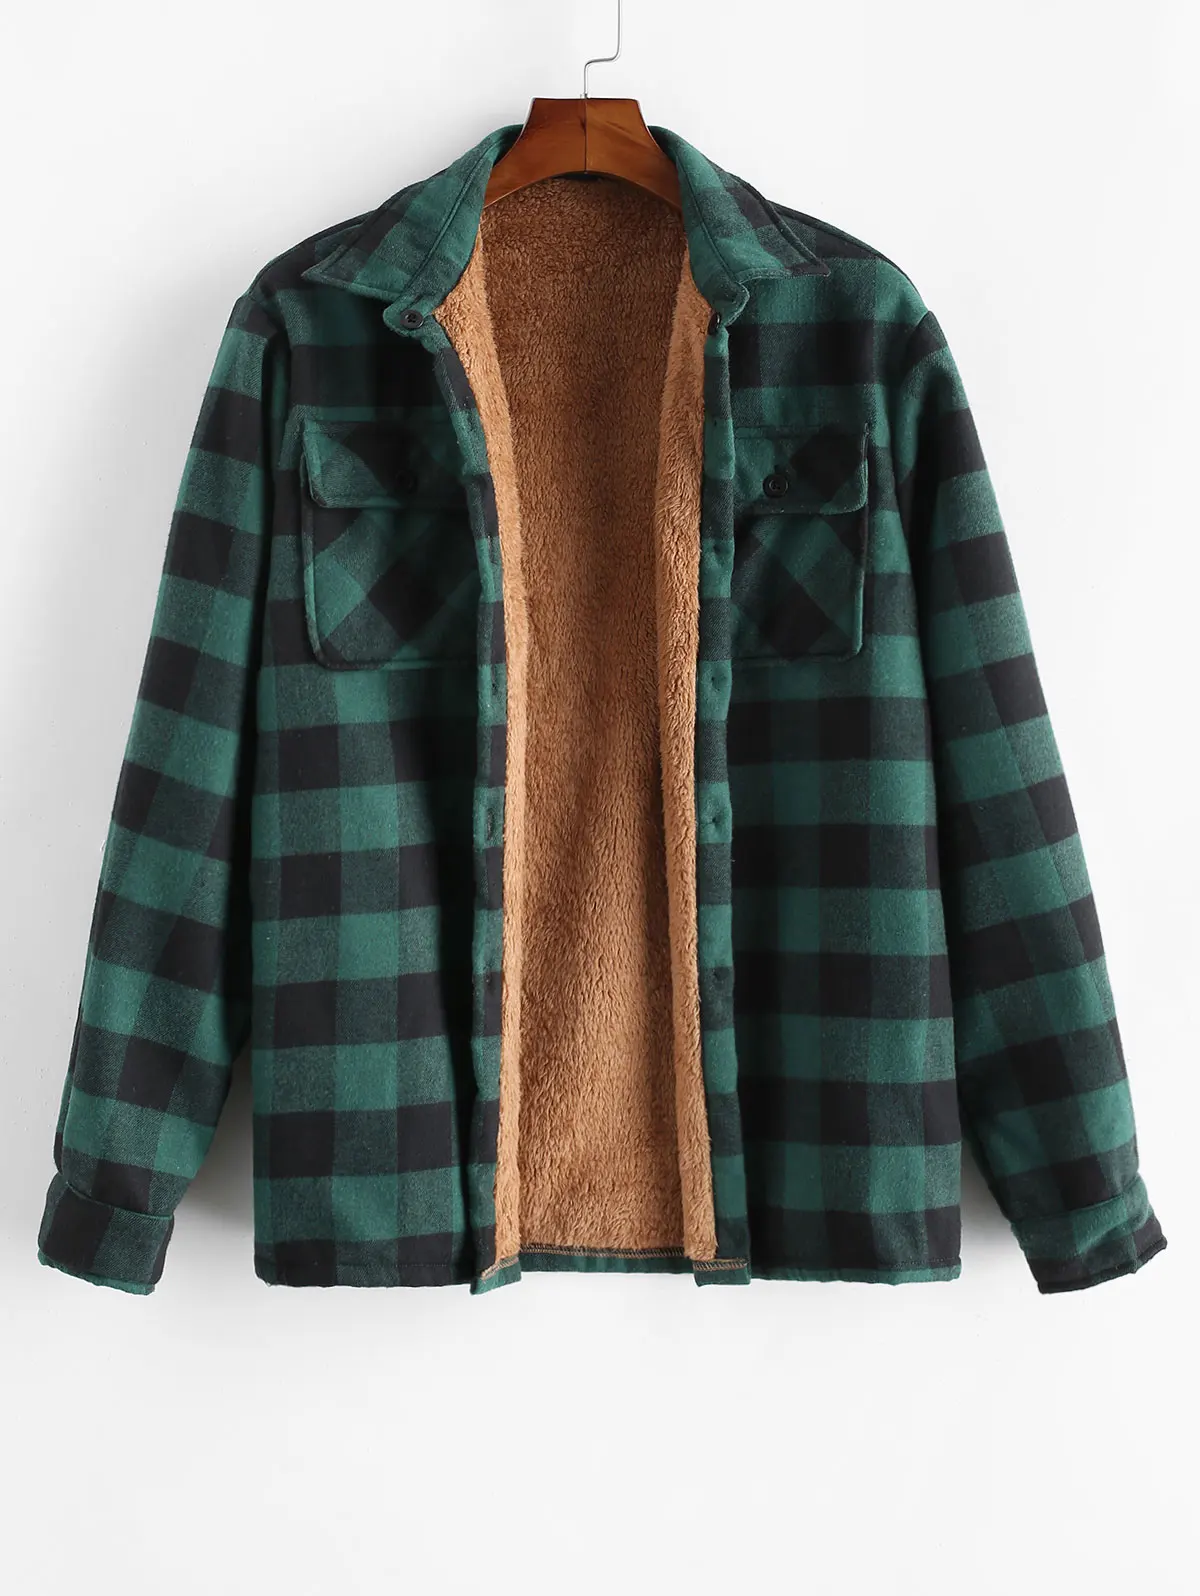 ZAFUL модная мужская зимняя теплая плюшевая тонкая рубашка с длинным рукавом, полосатая клетчатая рубашка с принтом для мужчин, плюшевая клетчатая куртка на пуговицах - Цвет: Deep Green